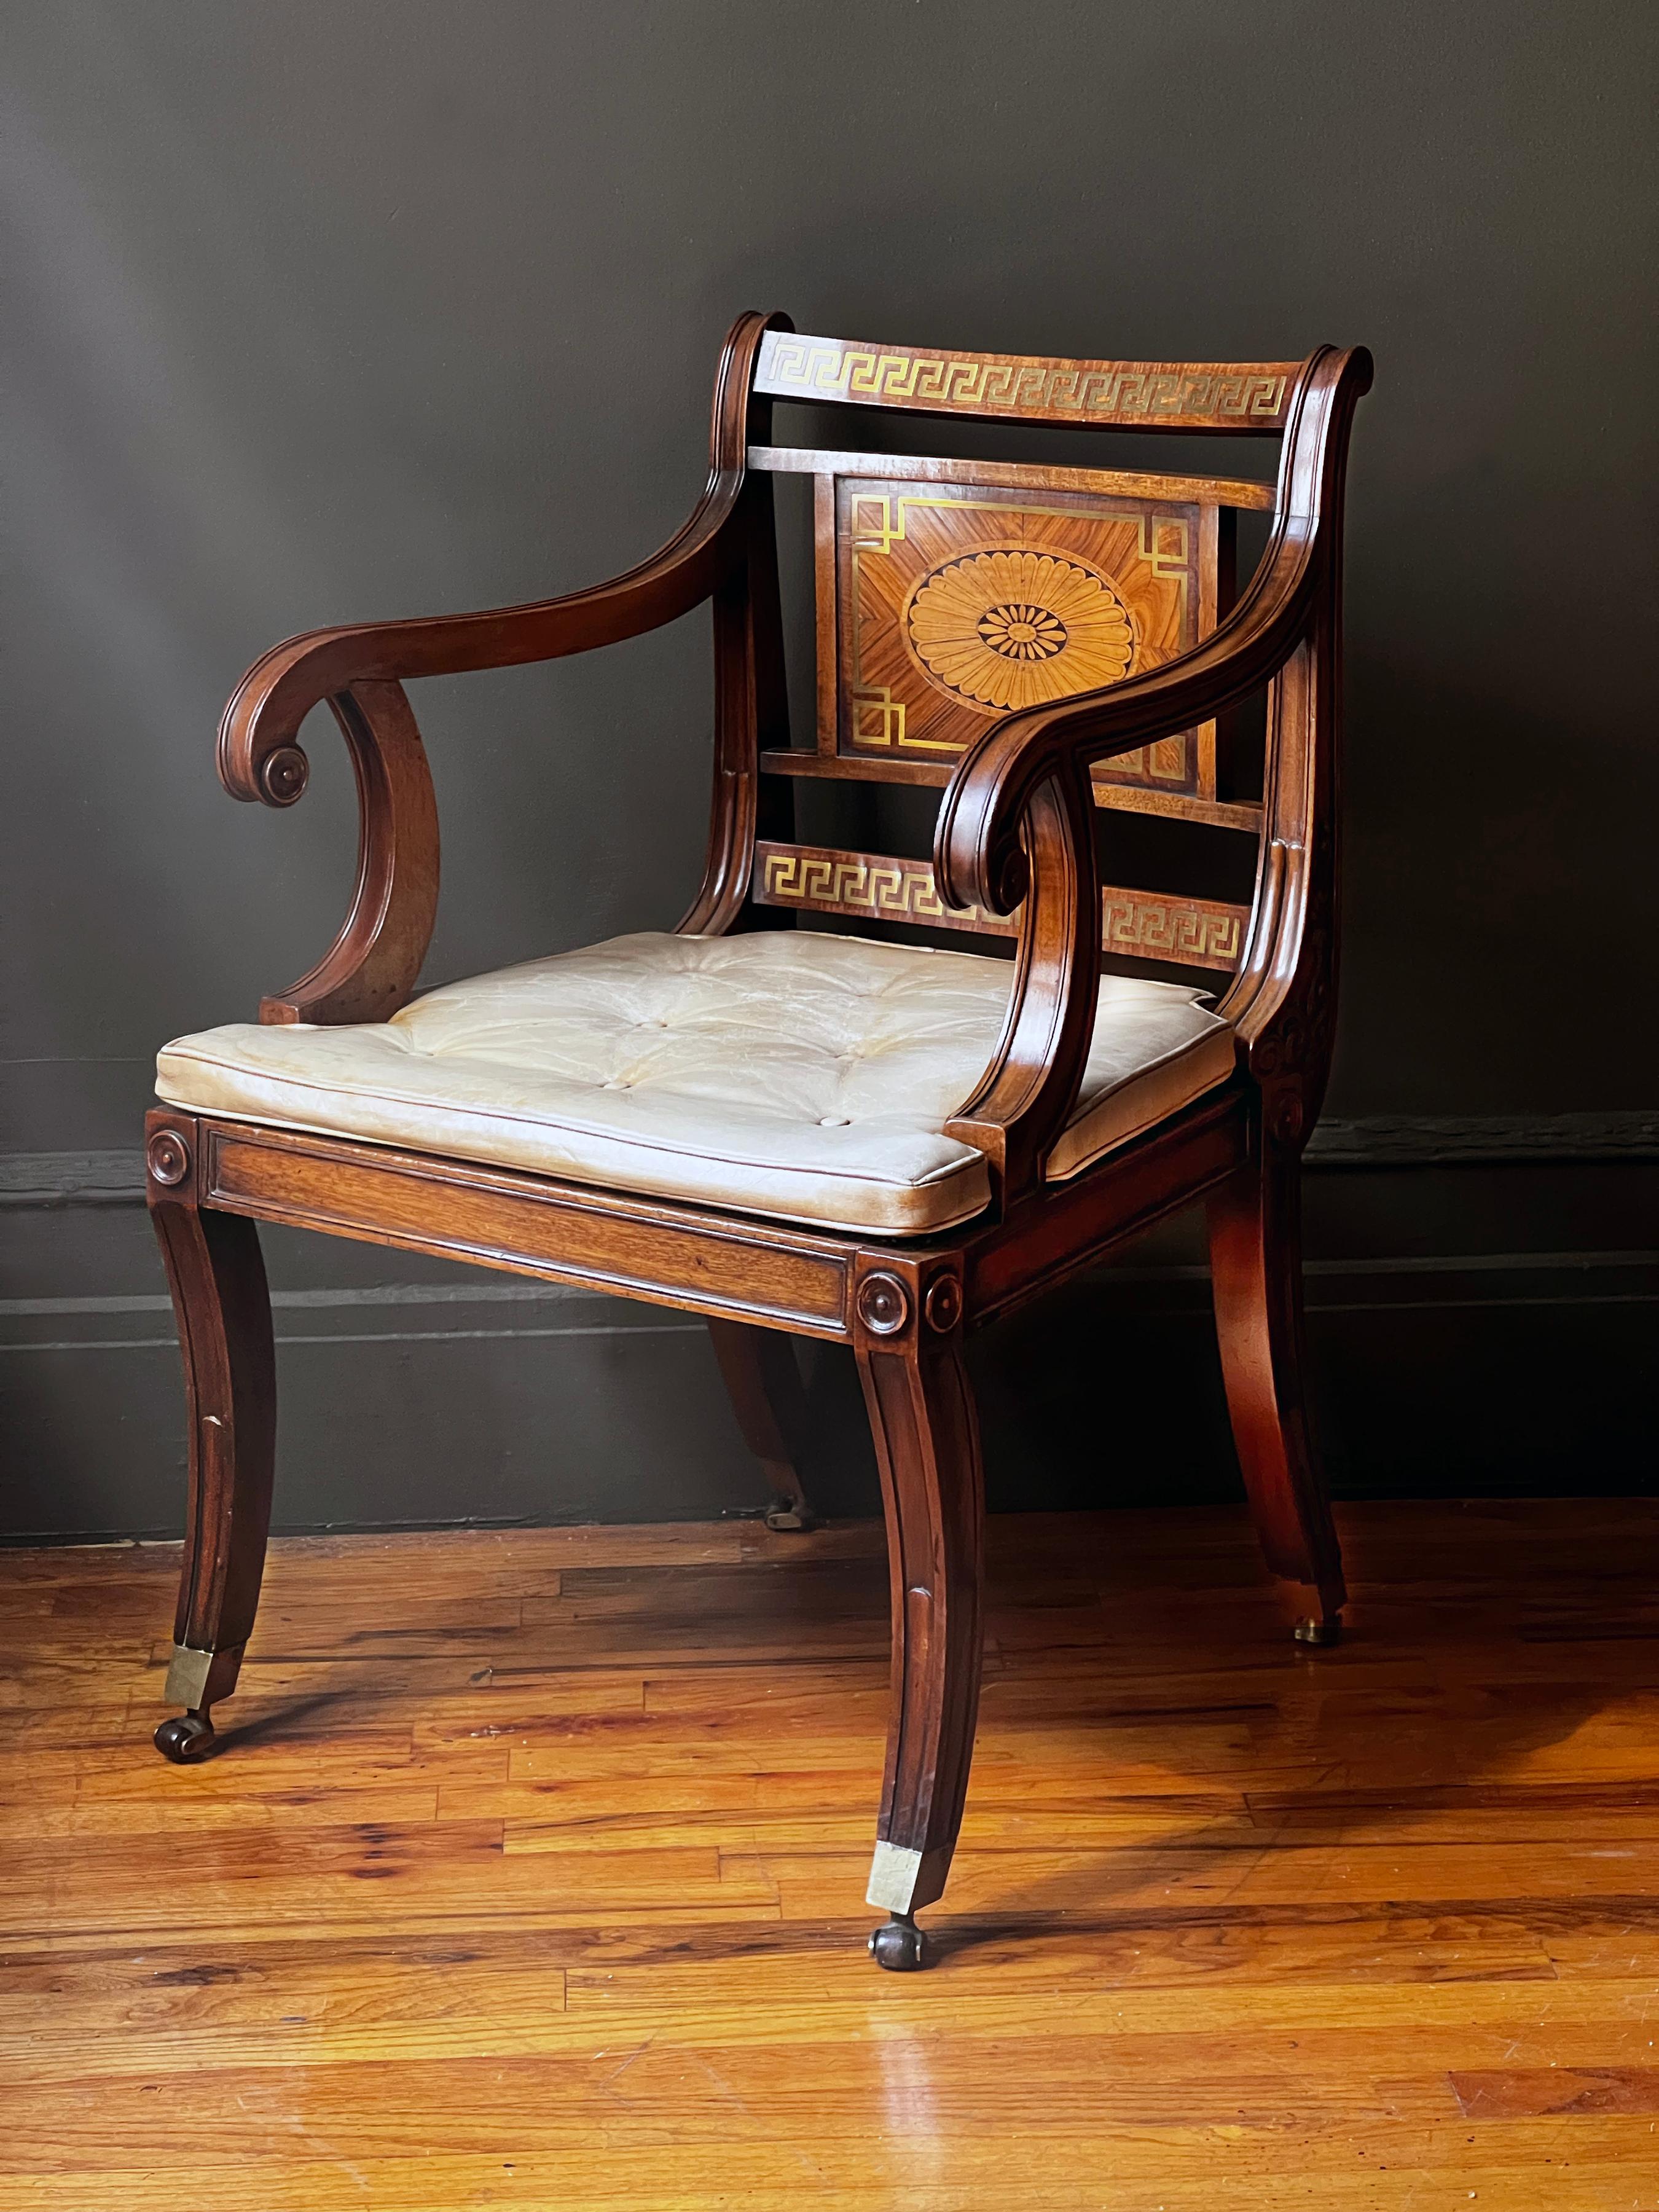 Un beau fauteuil de style Regency en acajou incrusté de laiton, plaqué de bois de rose, de bois satiné et de bois de roi, avec des panneaux de dossier incrustés de paterae sur un siège canné avec des coussins en squab tapissés de cuir, reposant sur